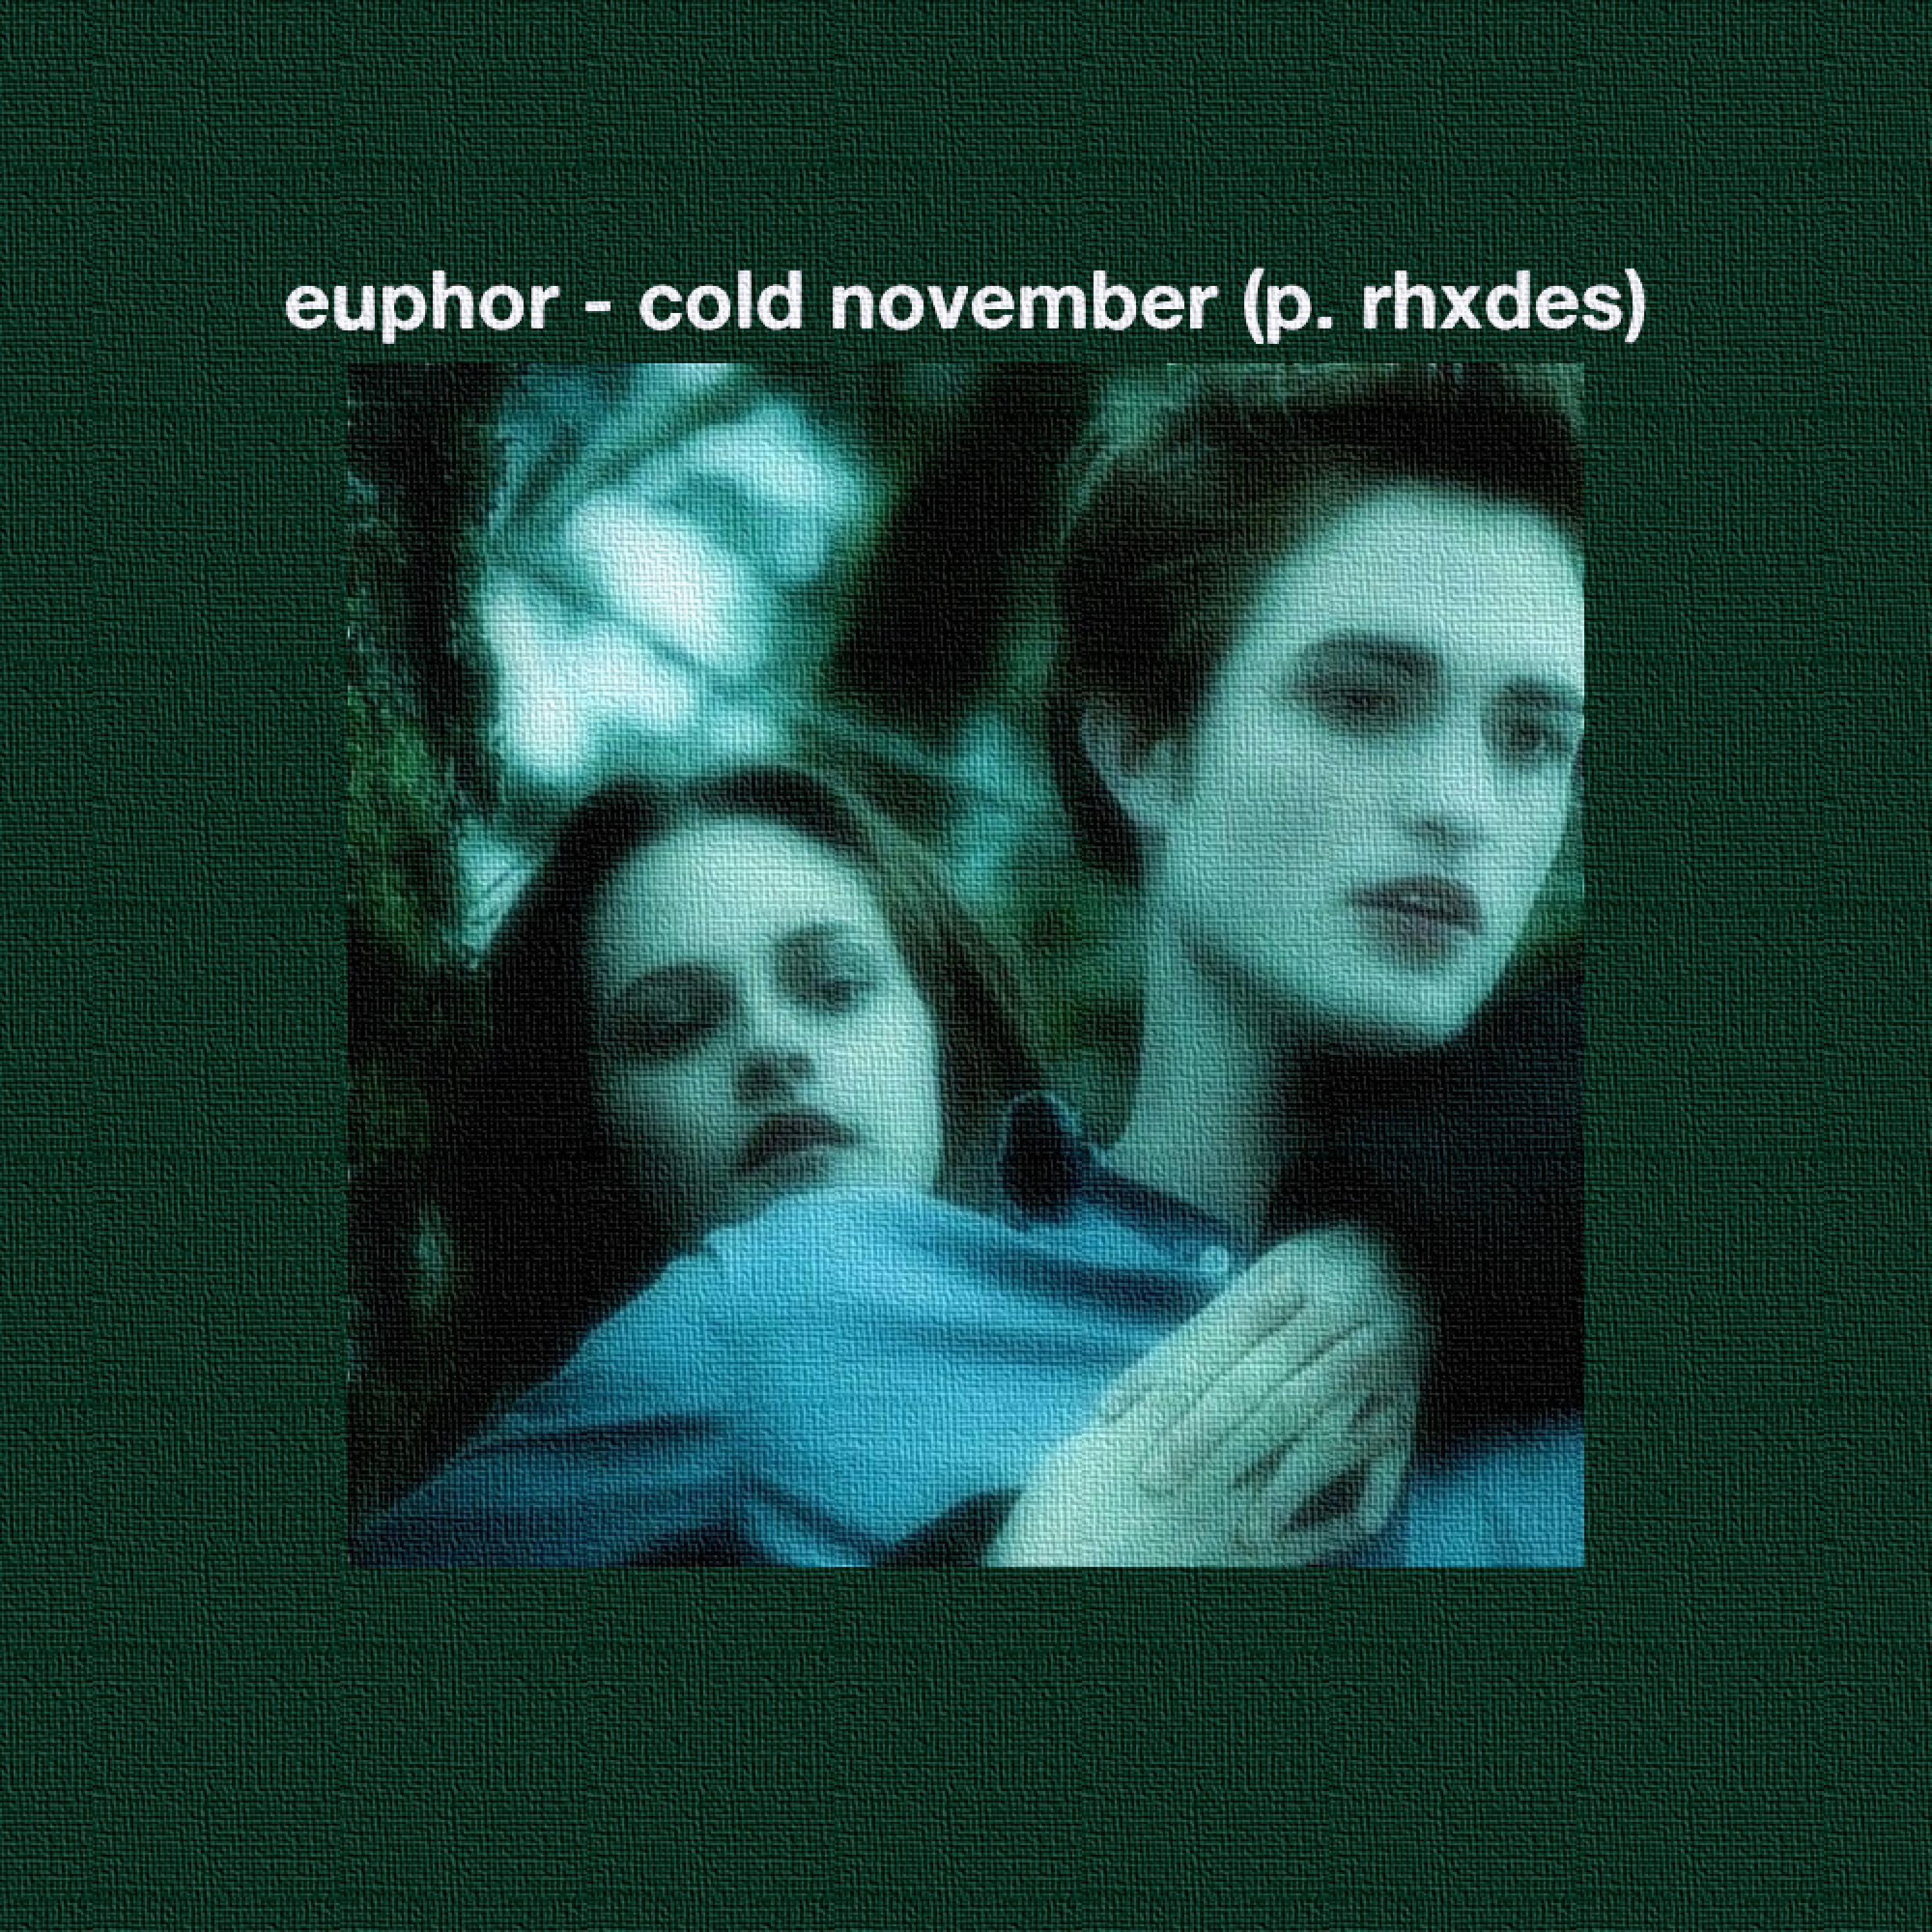 Euphor - cold november